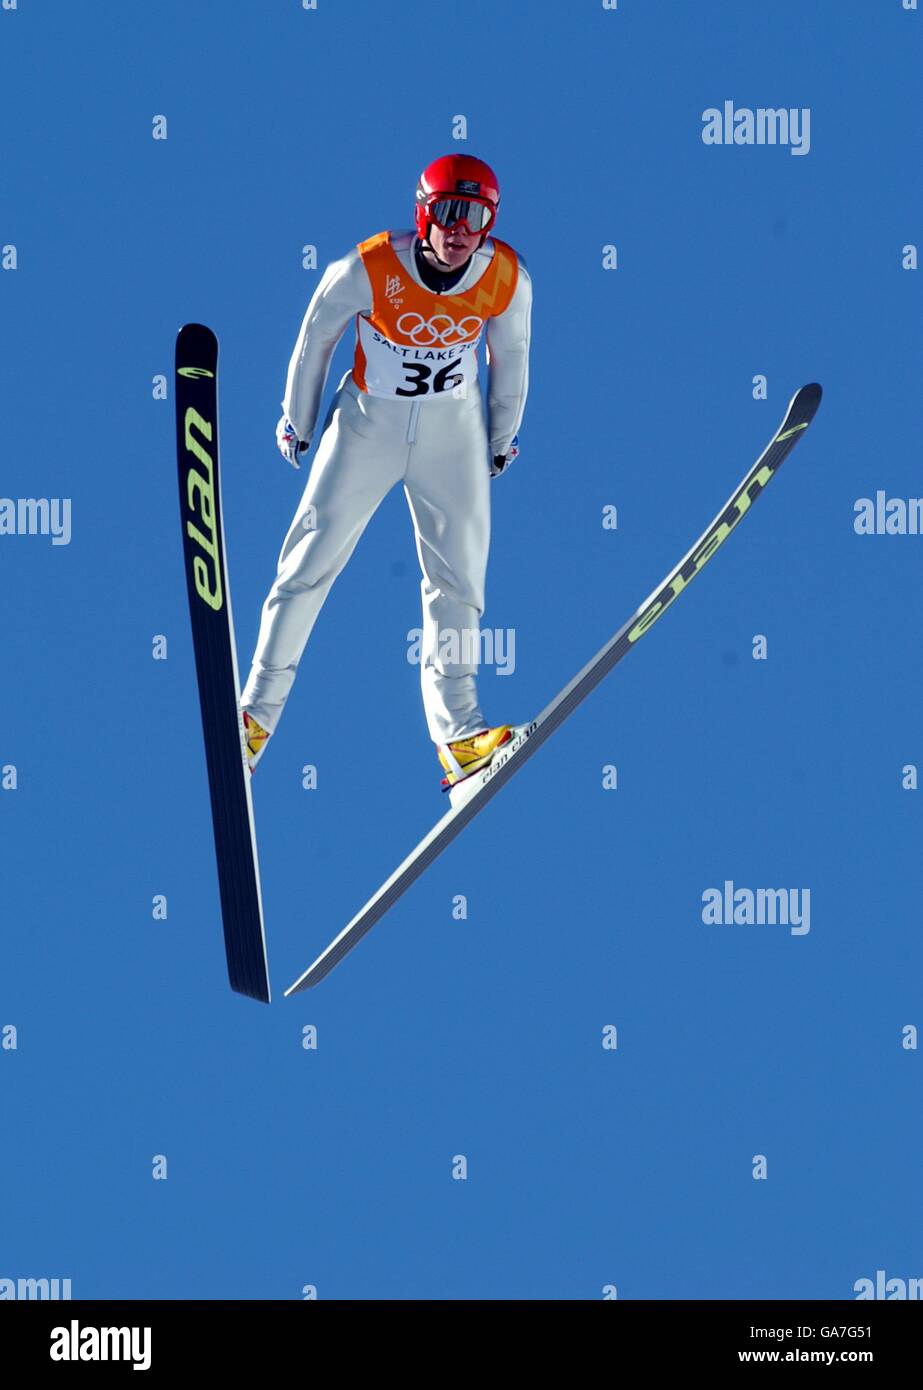 Olympische Winterspiele - Salt Lake City 2002 - Skispringen - individuell K120. Norwegens anders Bardal im Flug auf der K120-Schanze Stockfoto